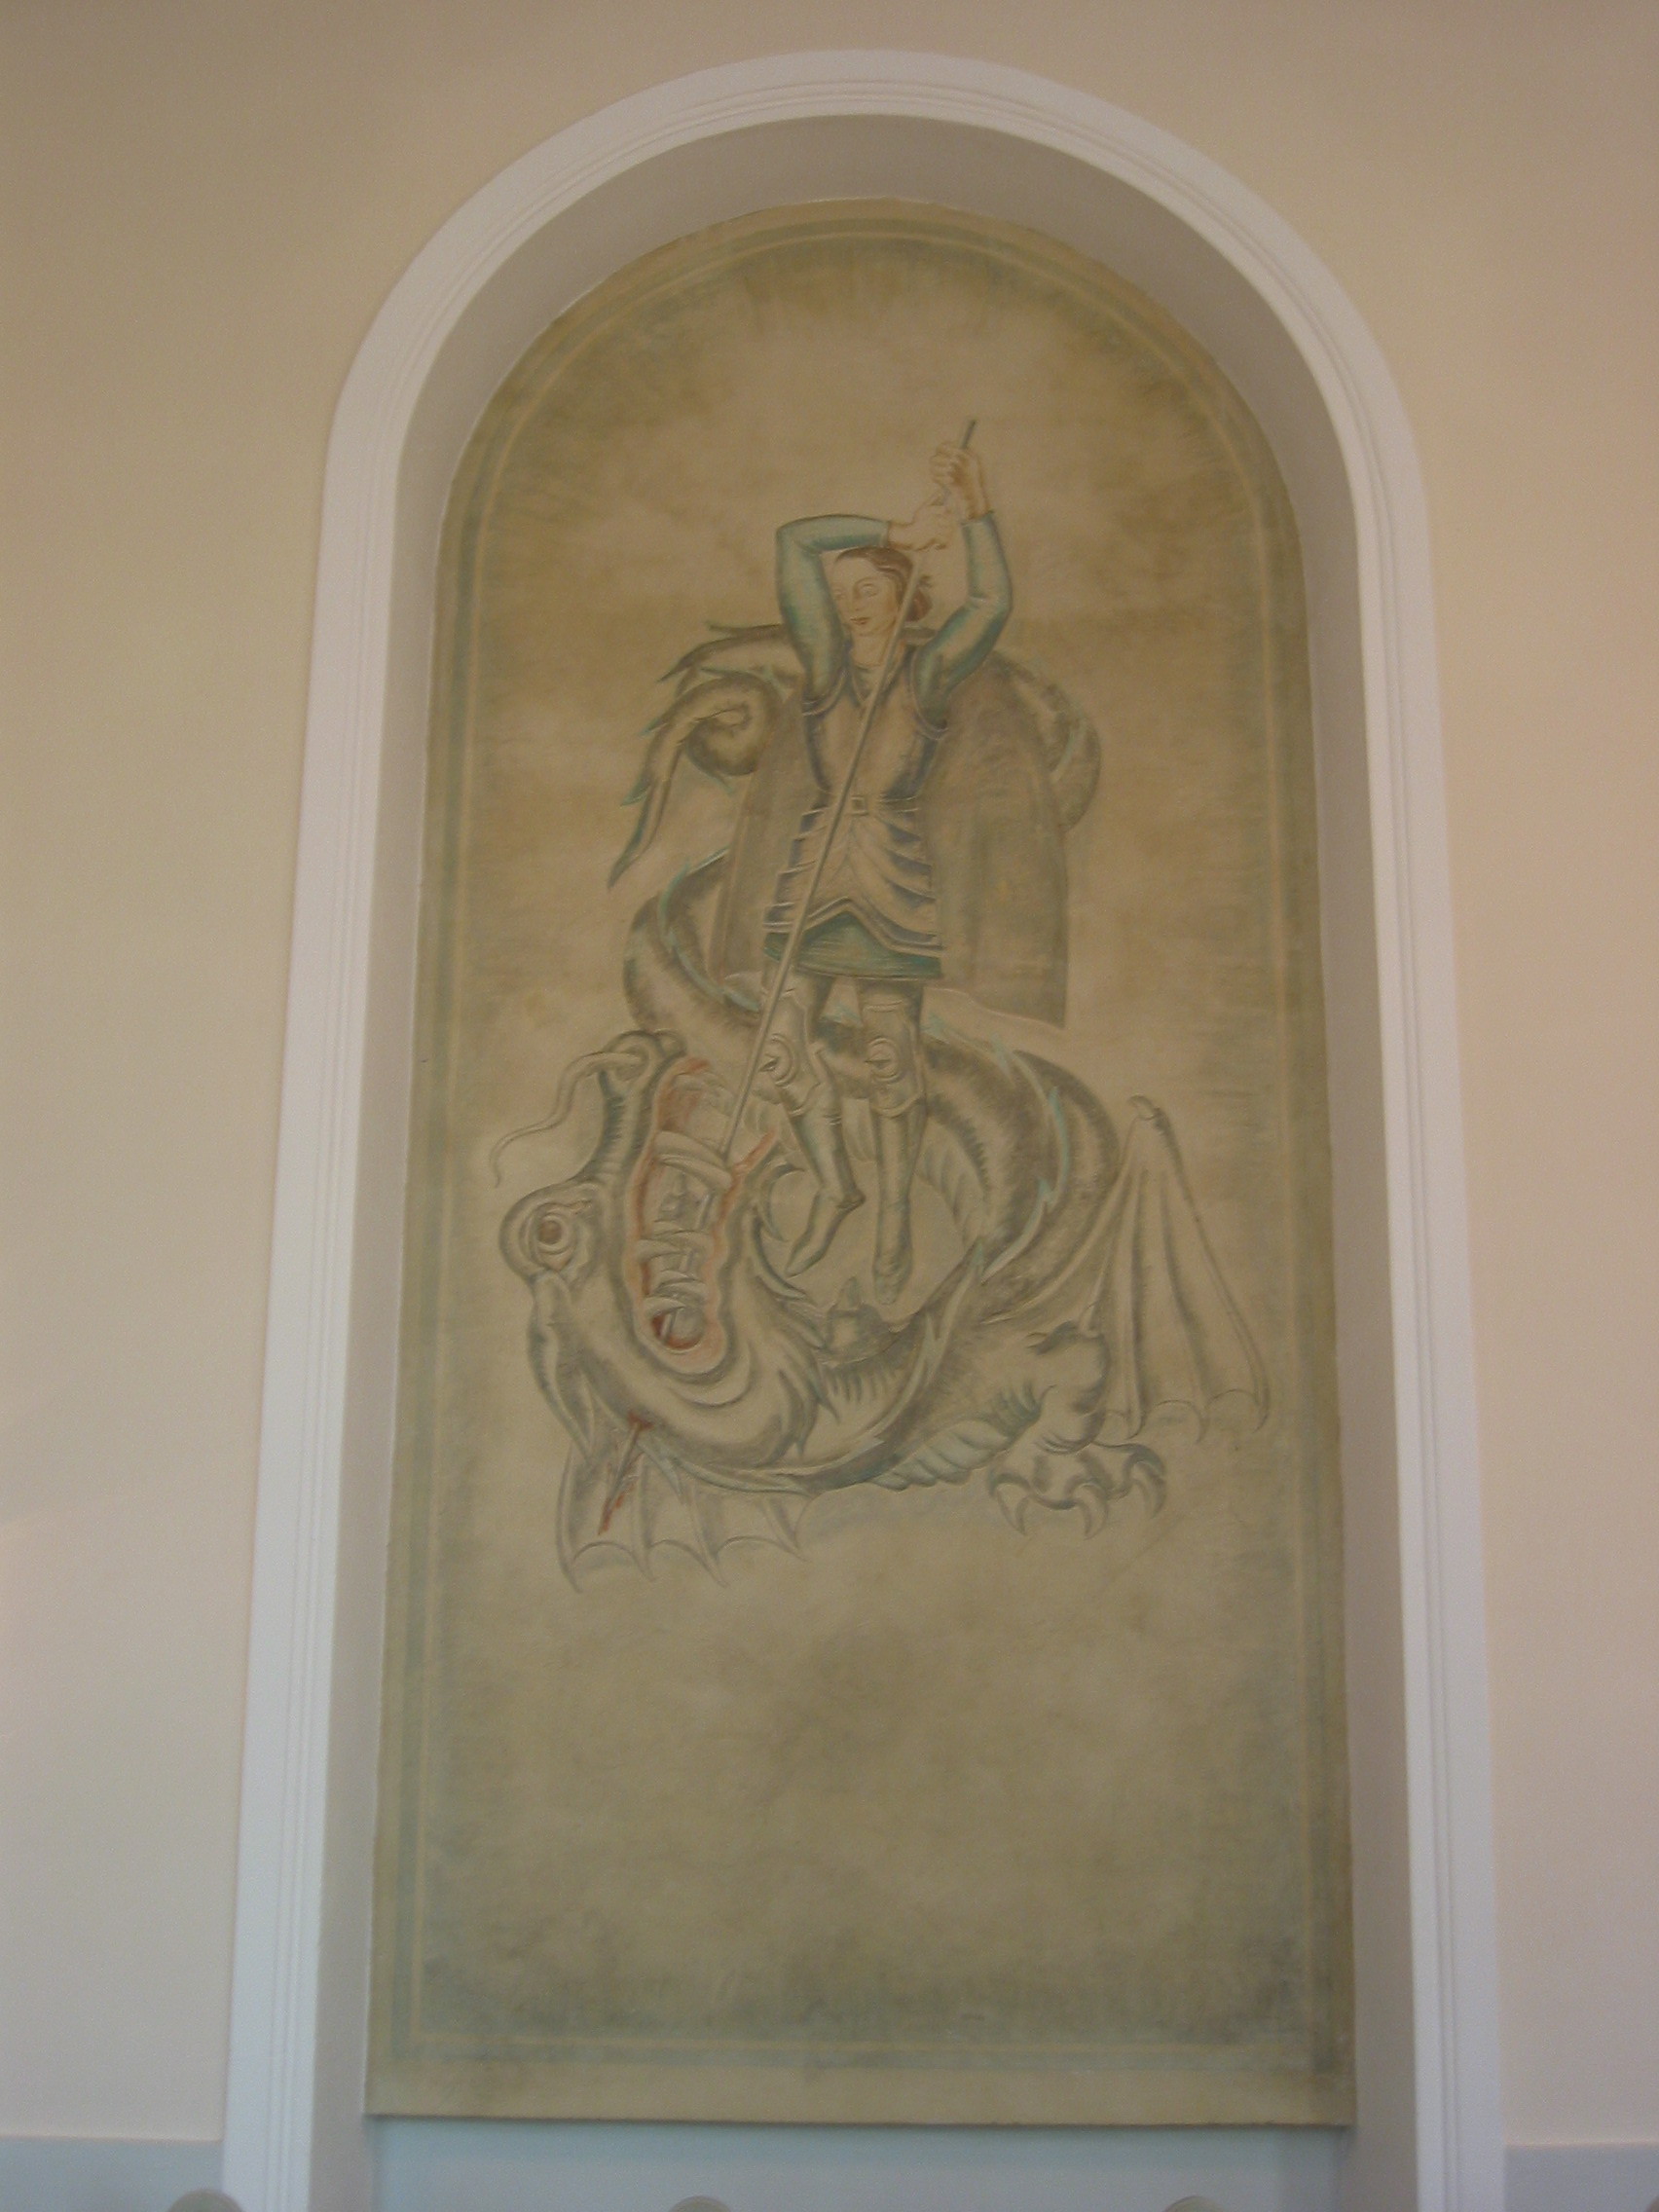 Ytterlännäs nya kyrka, interiör, kyrkorummet. 
I den igensatta nordportalen finns en väggmålning med St. Göran och draken från 1928, utförd av Torsten Nordberg.

